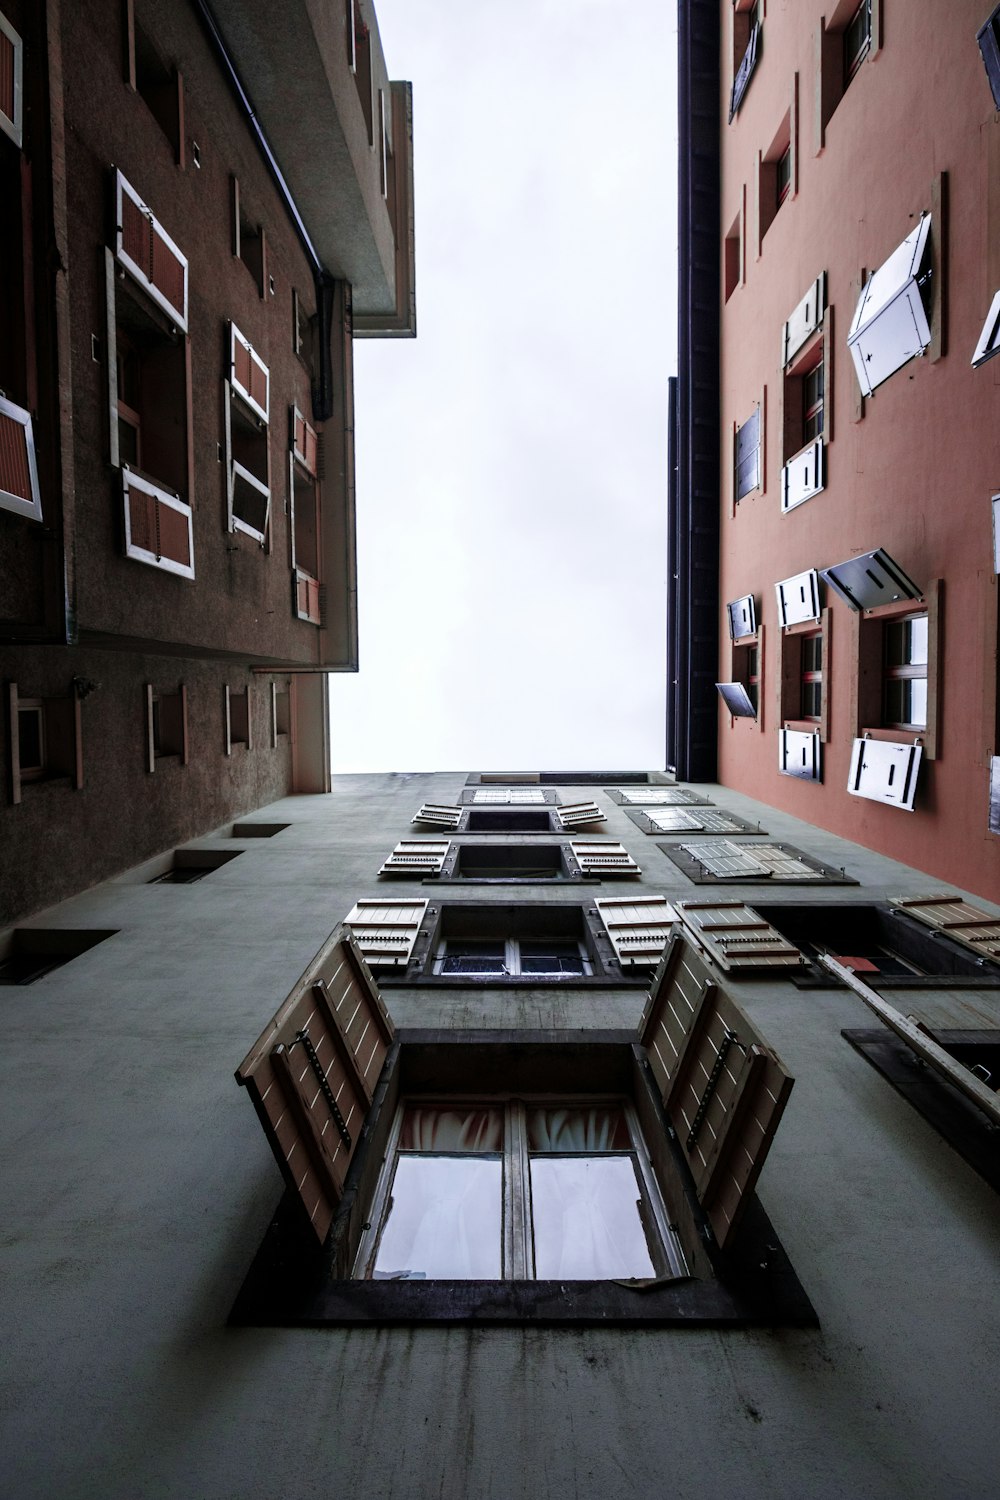 Fotografía de ángulo bajo de un edificio con ventanas abiertas durante el día